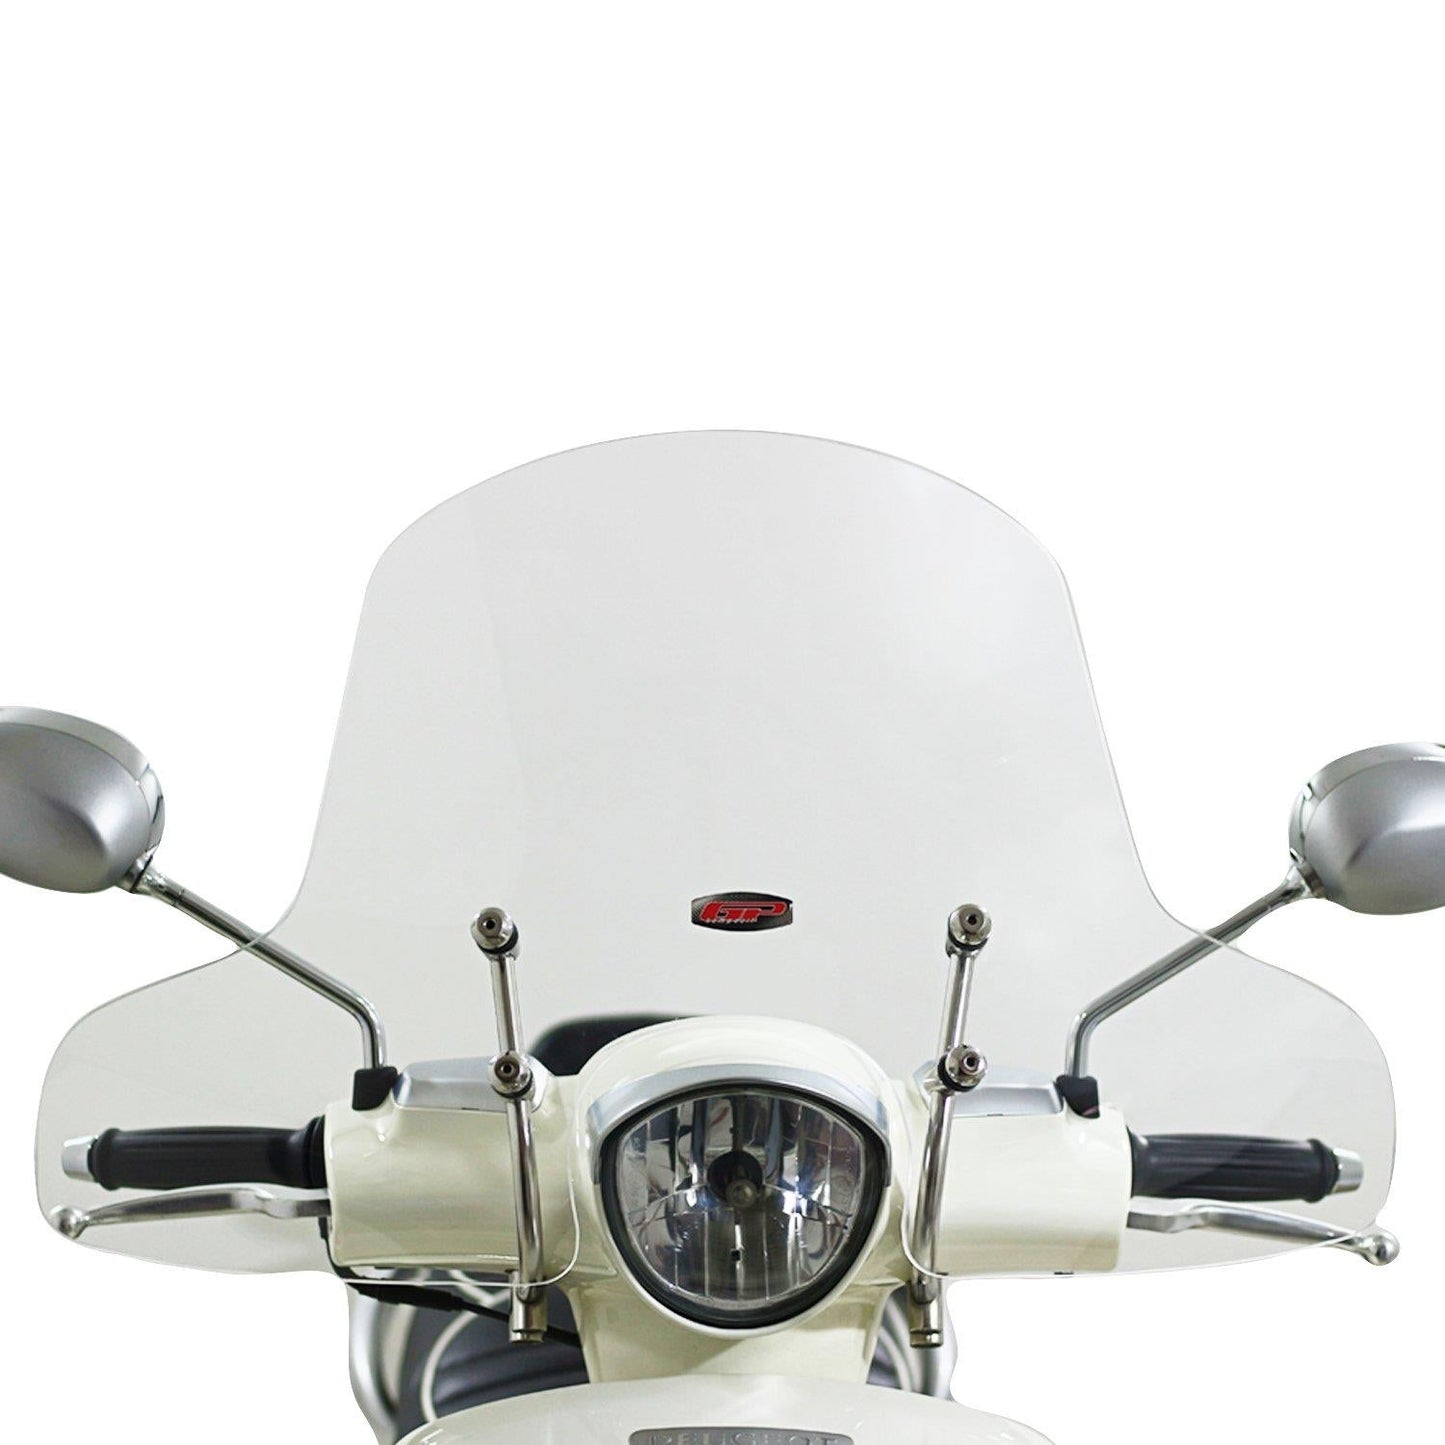 Peugeot Django 125 150 smoke windscreen 2014-18 - Equipment4motorcycle